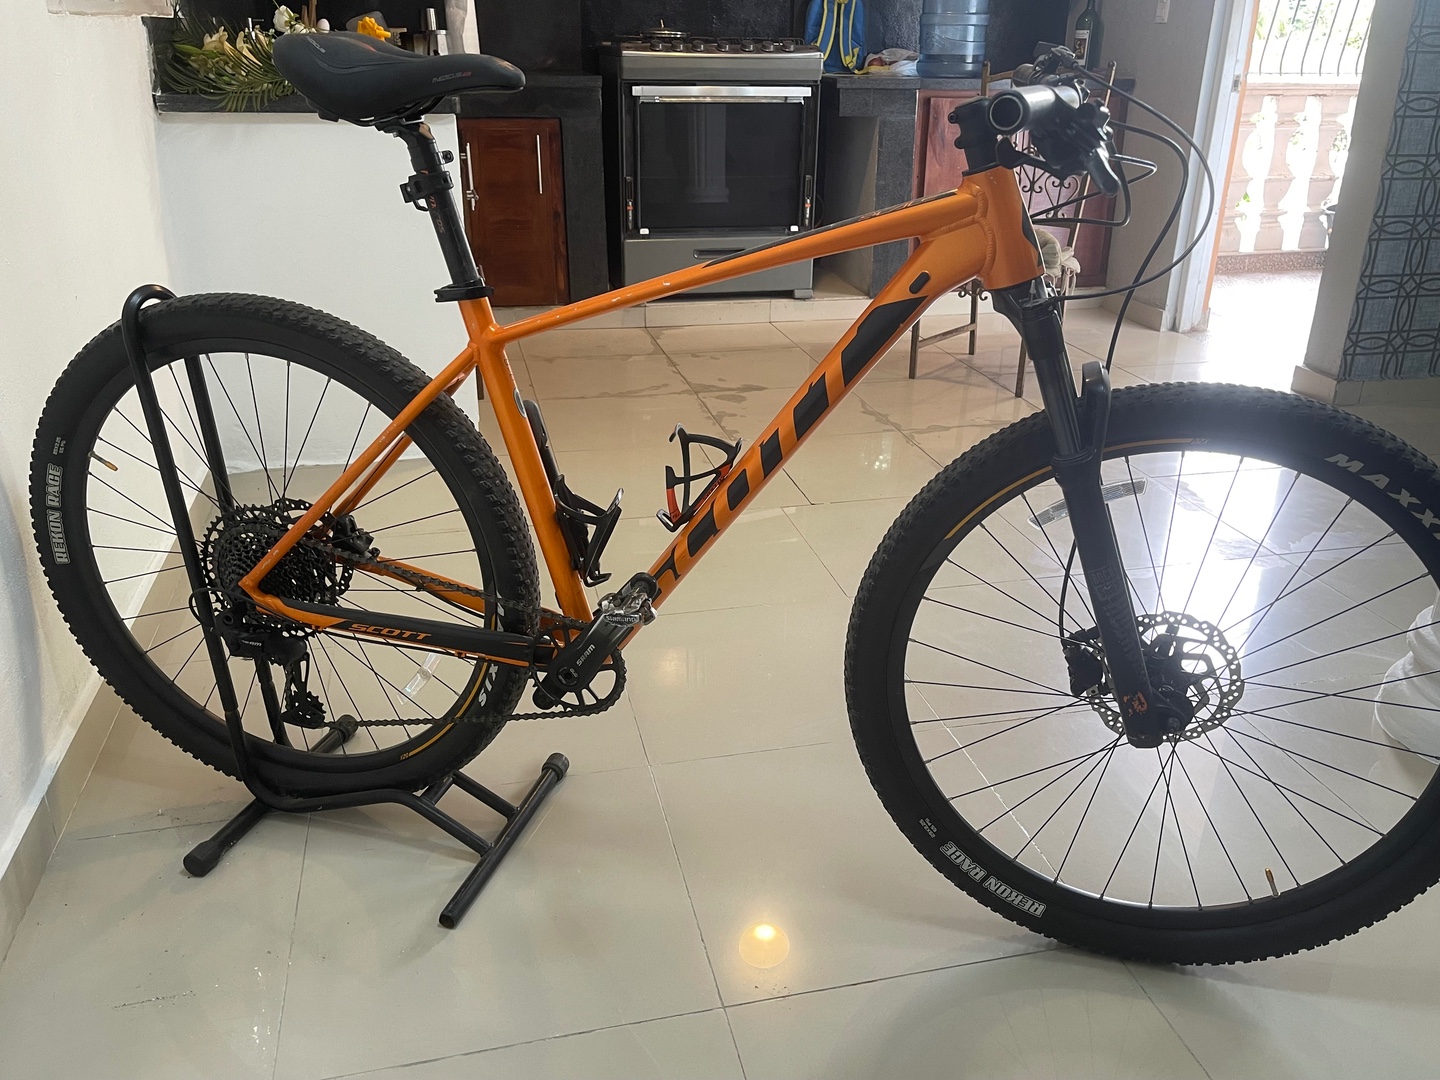 bicicletas y accesorios - Bicicleta Schott 970 color Naranja en Venta.  7